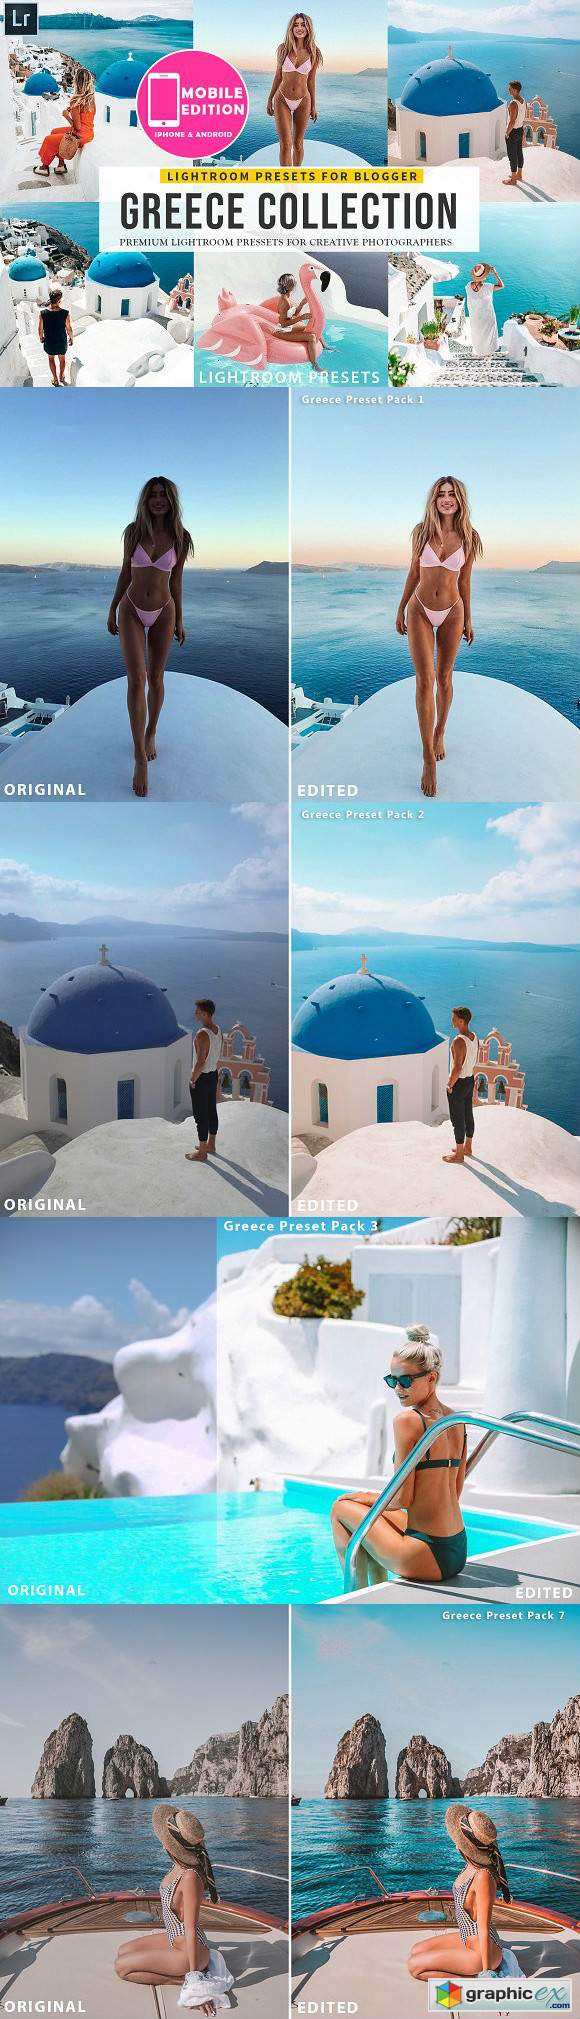 Greece Travel Lightroom Presets